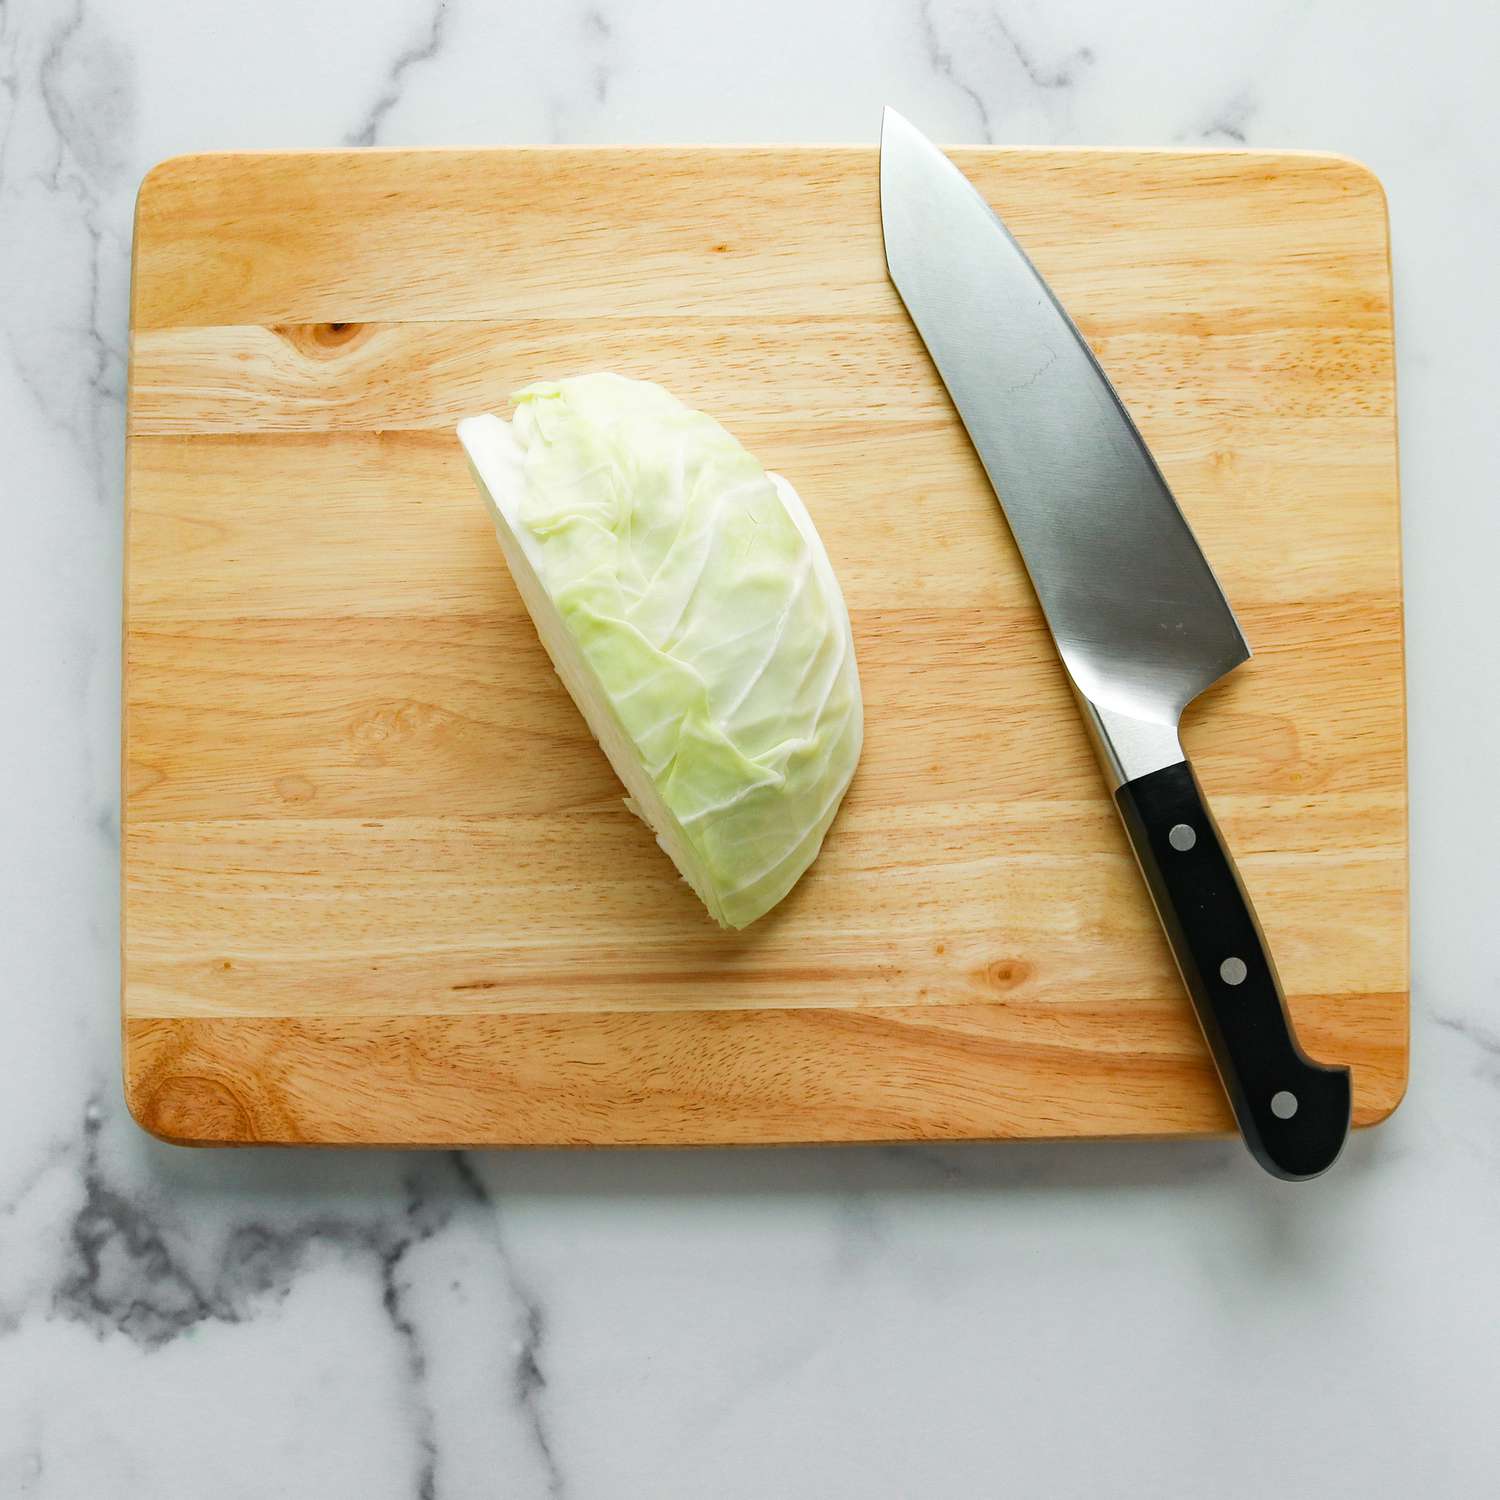 Repollo colocado al lado del cuchillo de cocina en una tabla de cortar